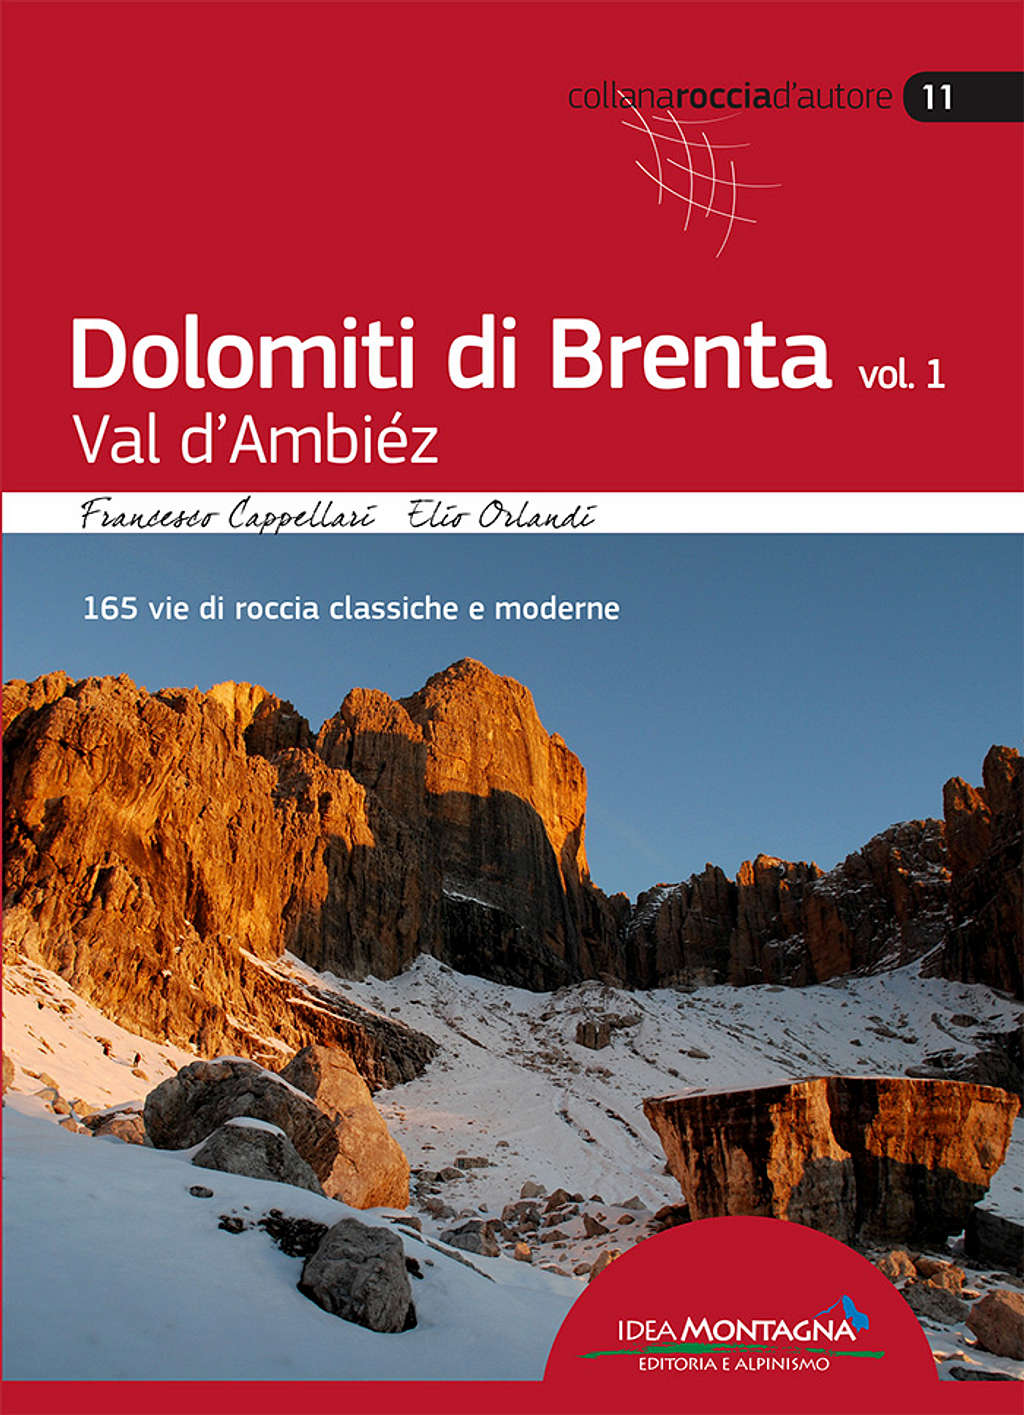 Dolomiti-di-Brenta-vol1